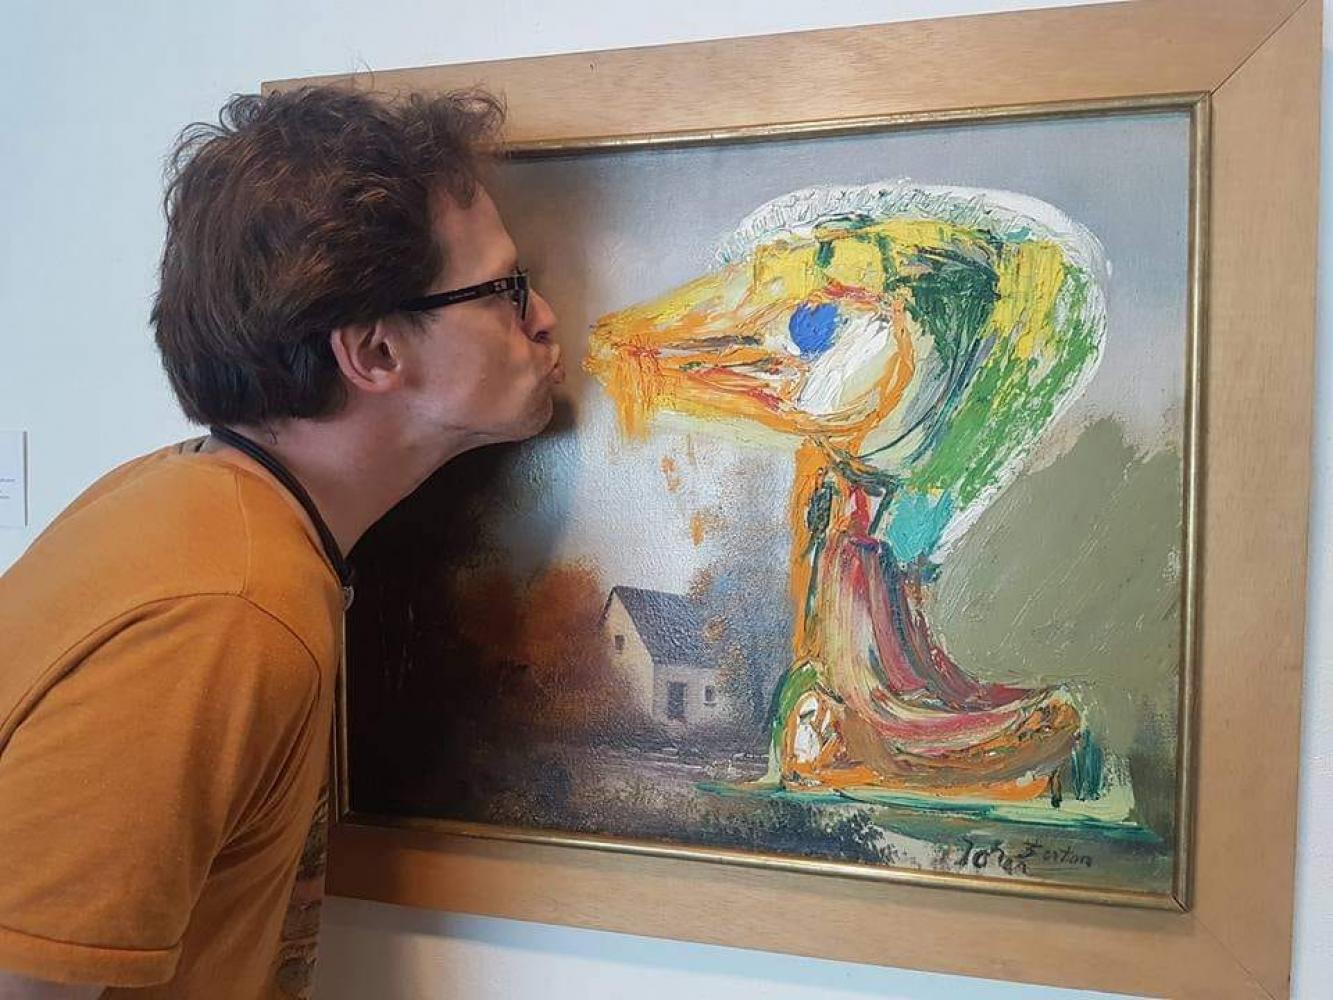 Künstlerin Ibi-Pippi Orup Hedegaard vor dem Bild "Das beunruhigende Entlein" von Asger Jorn im Museum Jorn im dänischen Silkeborg 